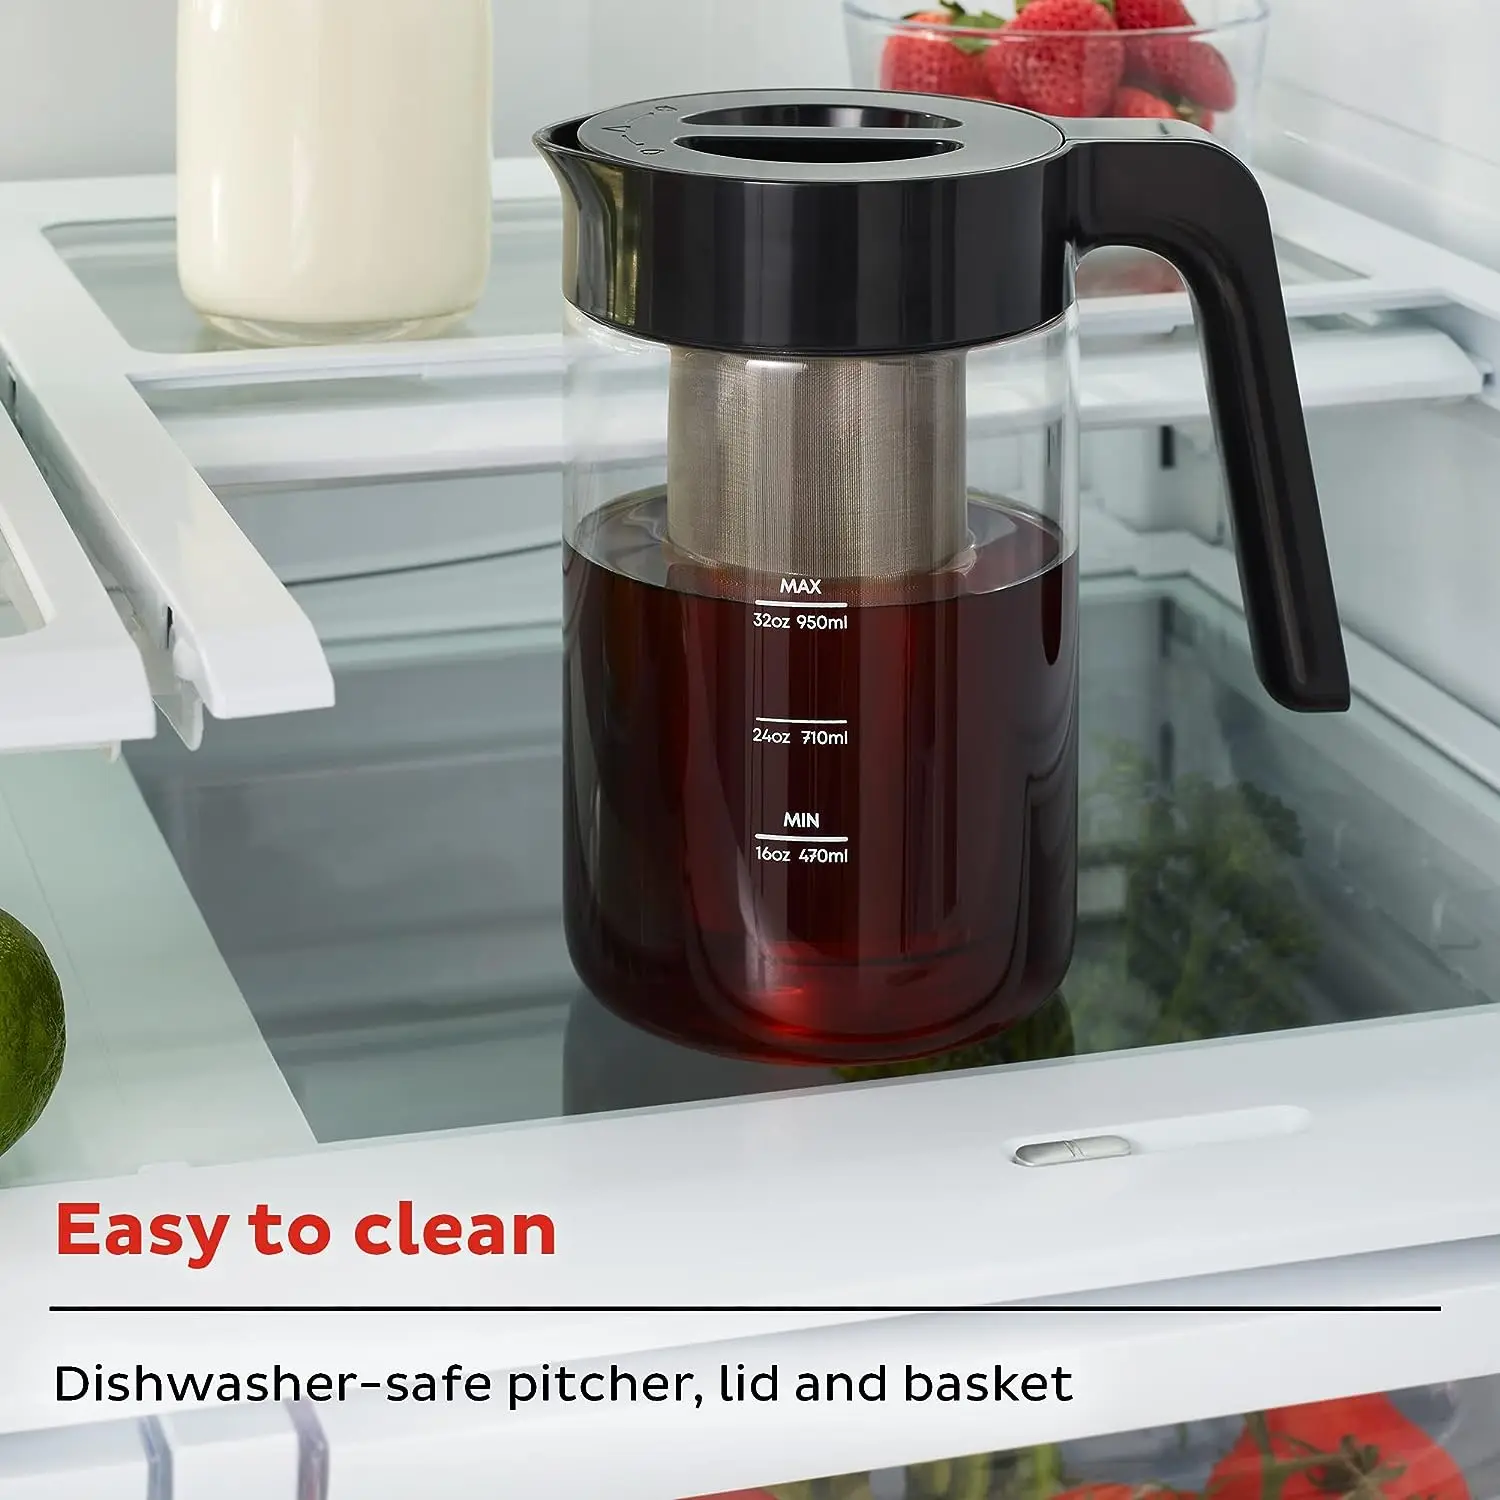 Электрическая кофеварка Brew, от The Makers of Pot, Быстро охлаждает заварку, настраивает крепость напитка, проста в использовании, можно мыть в посудомоечной машине.